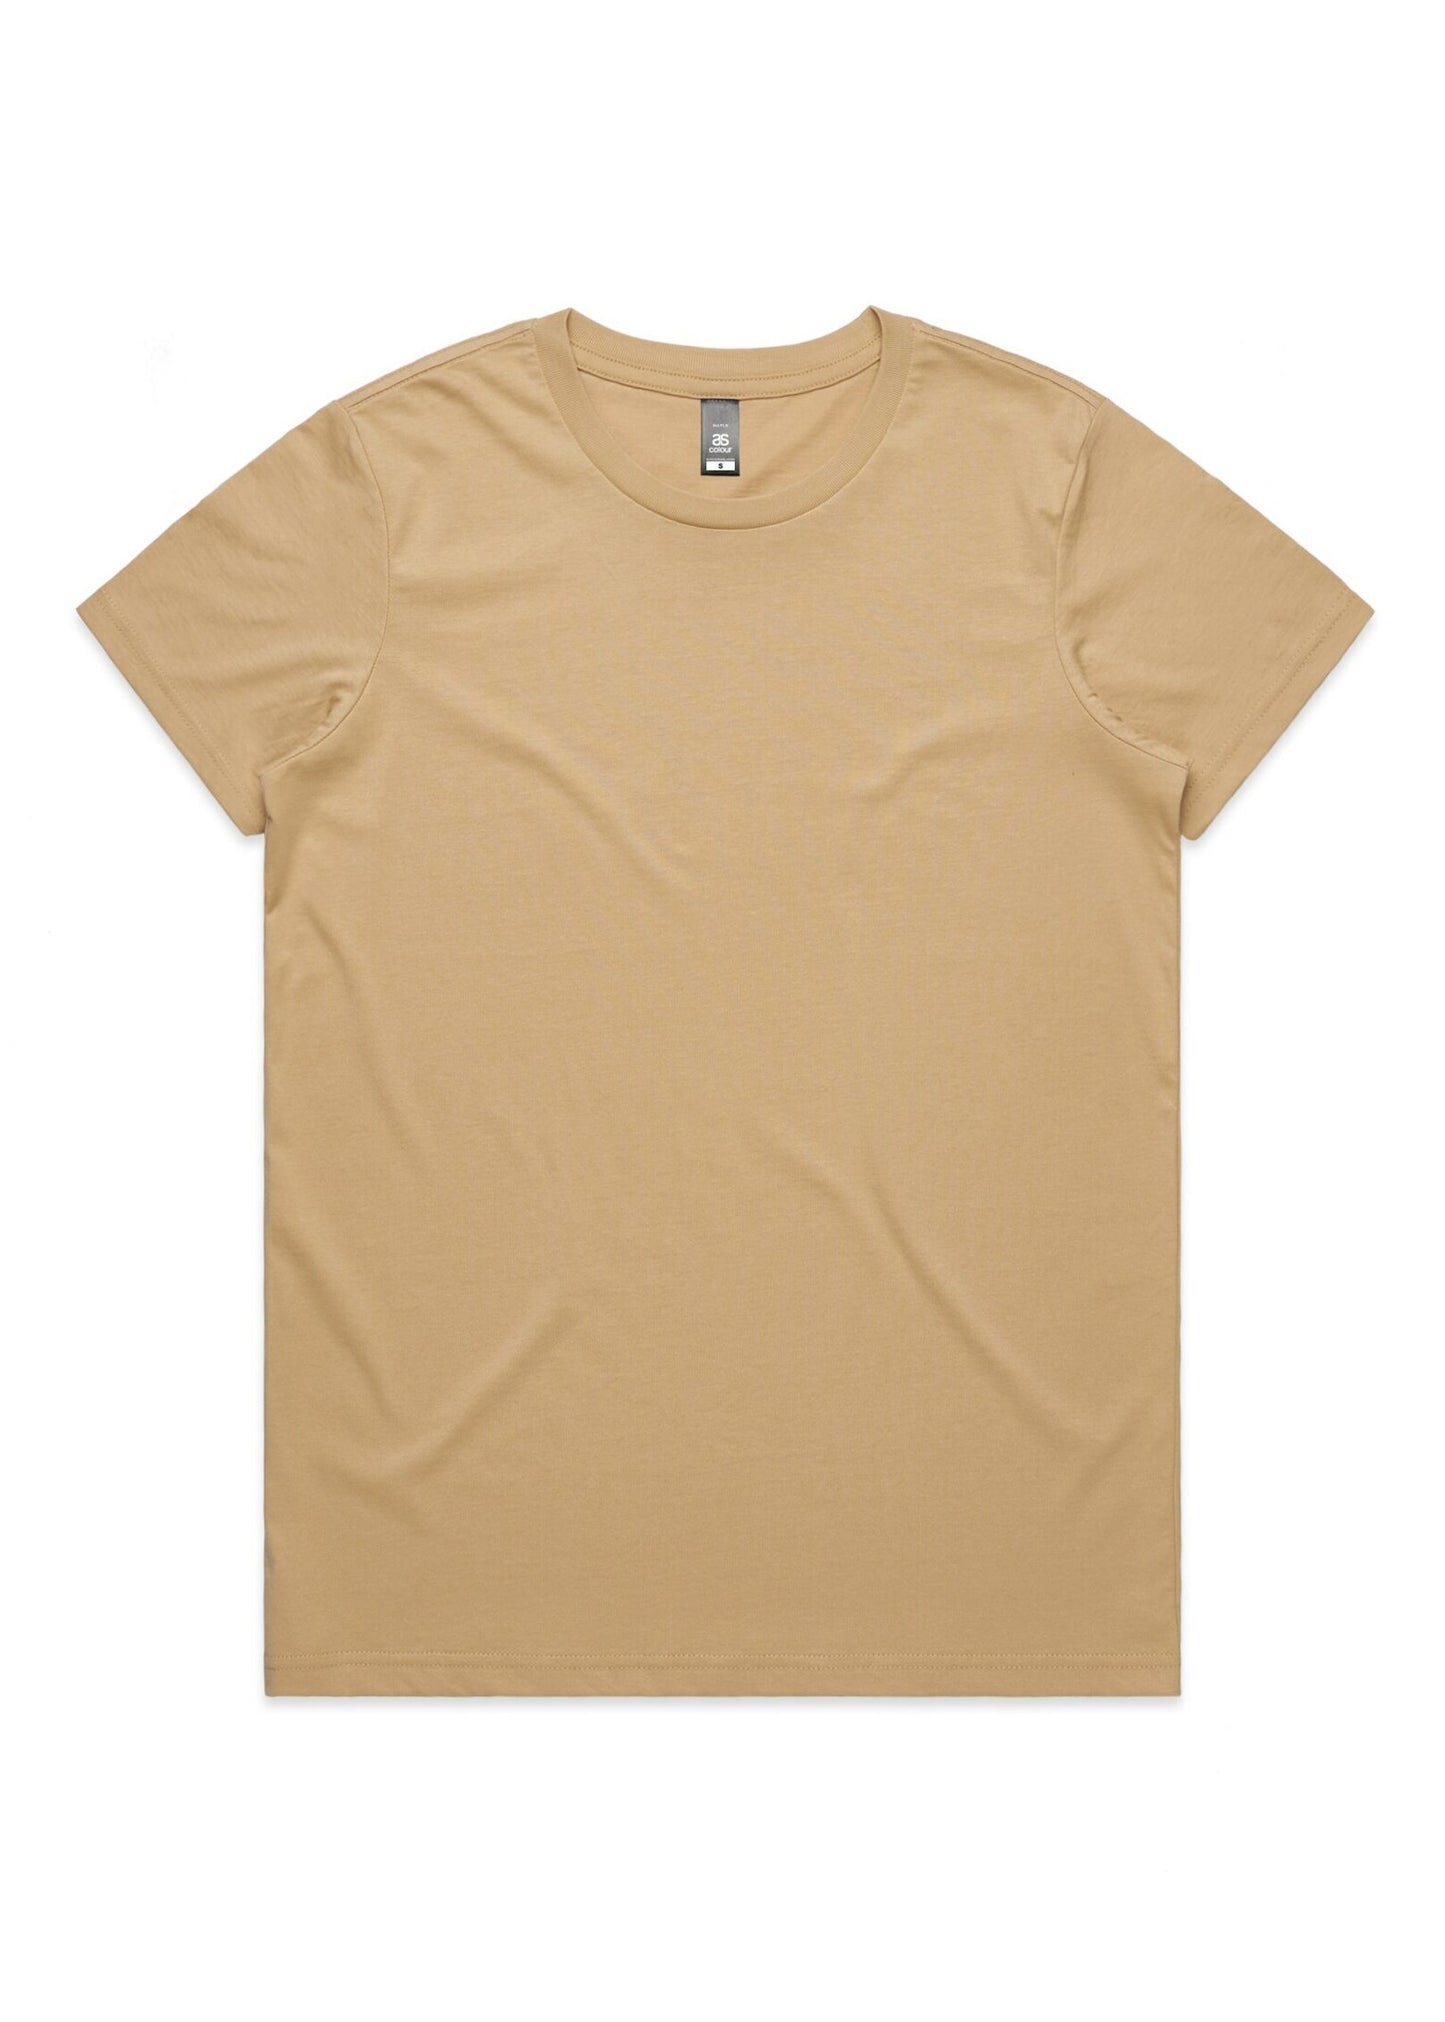 AS Colour Ladies Maple T-shirt